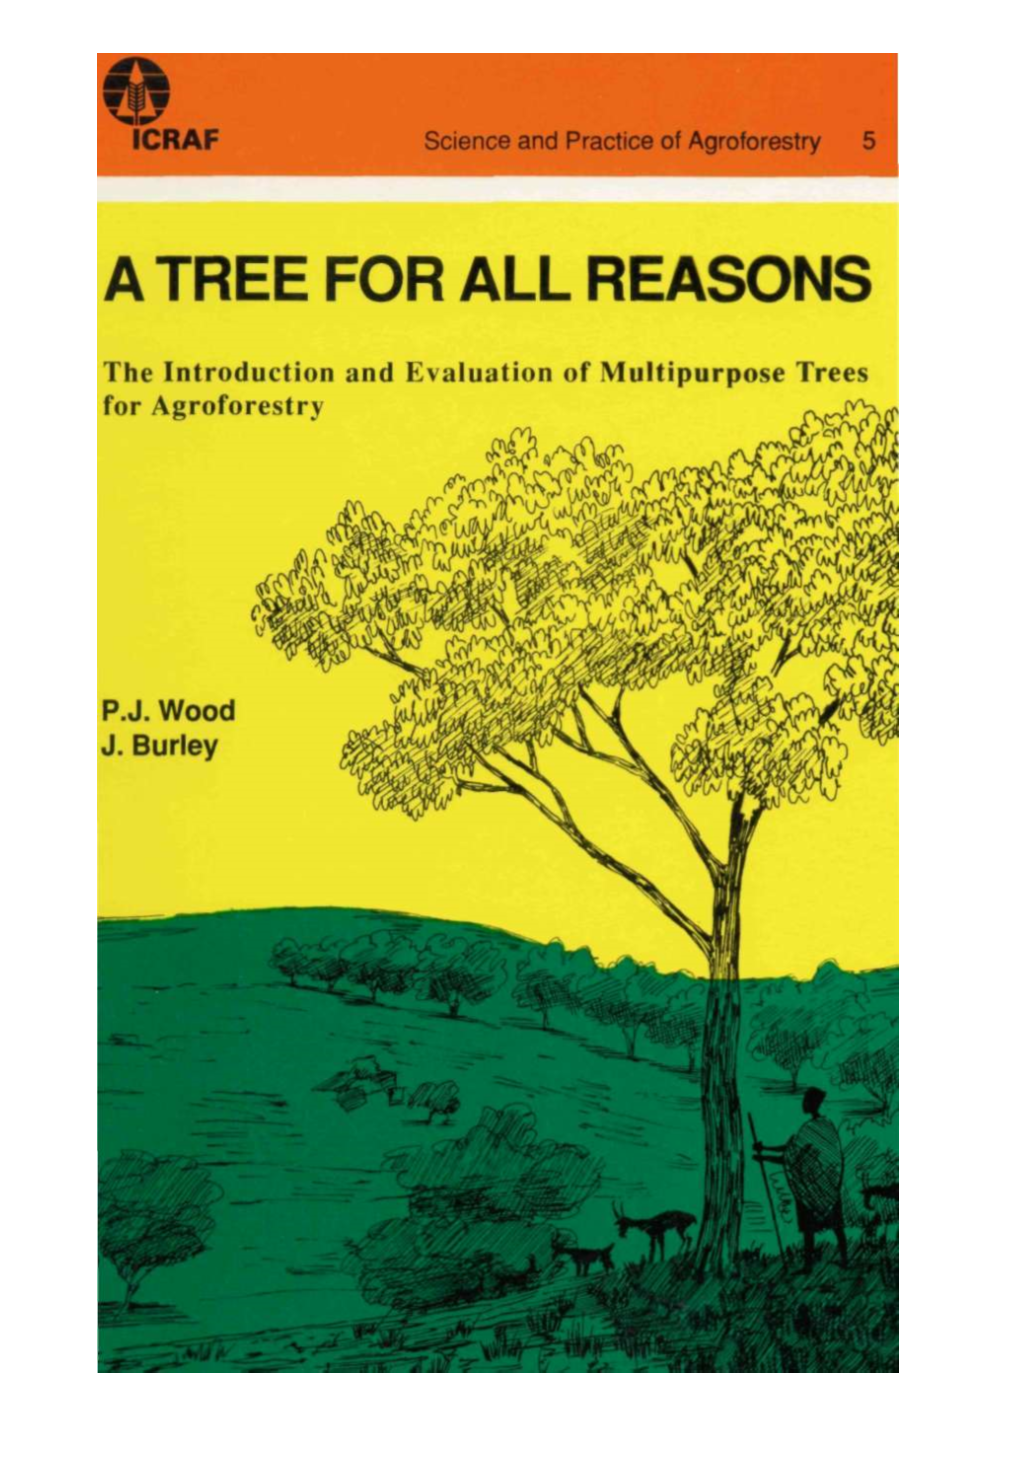 Multipurpose Trees for Agroforestry